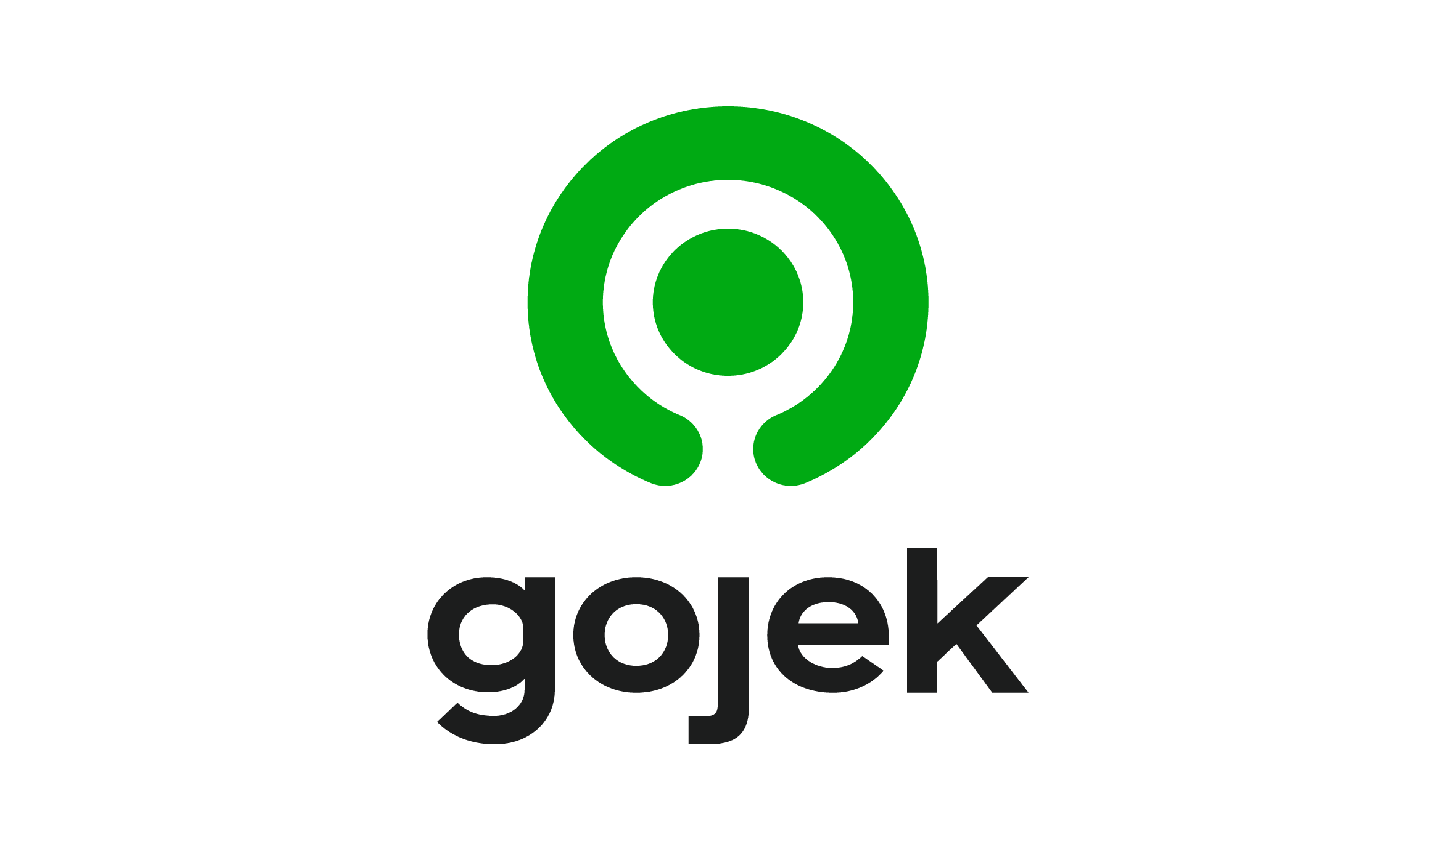 Gojek Logo - Gojek launches rebrand to bolster super